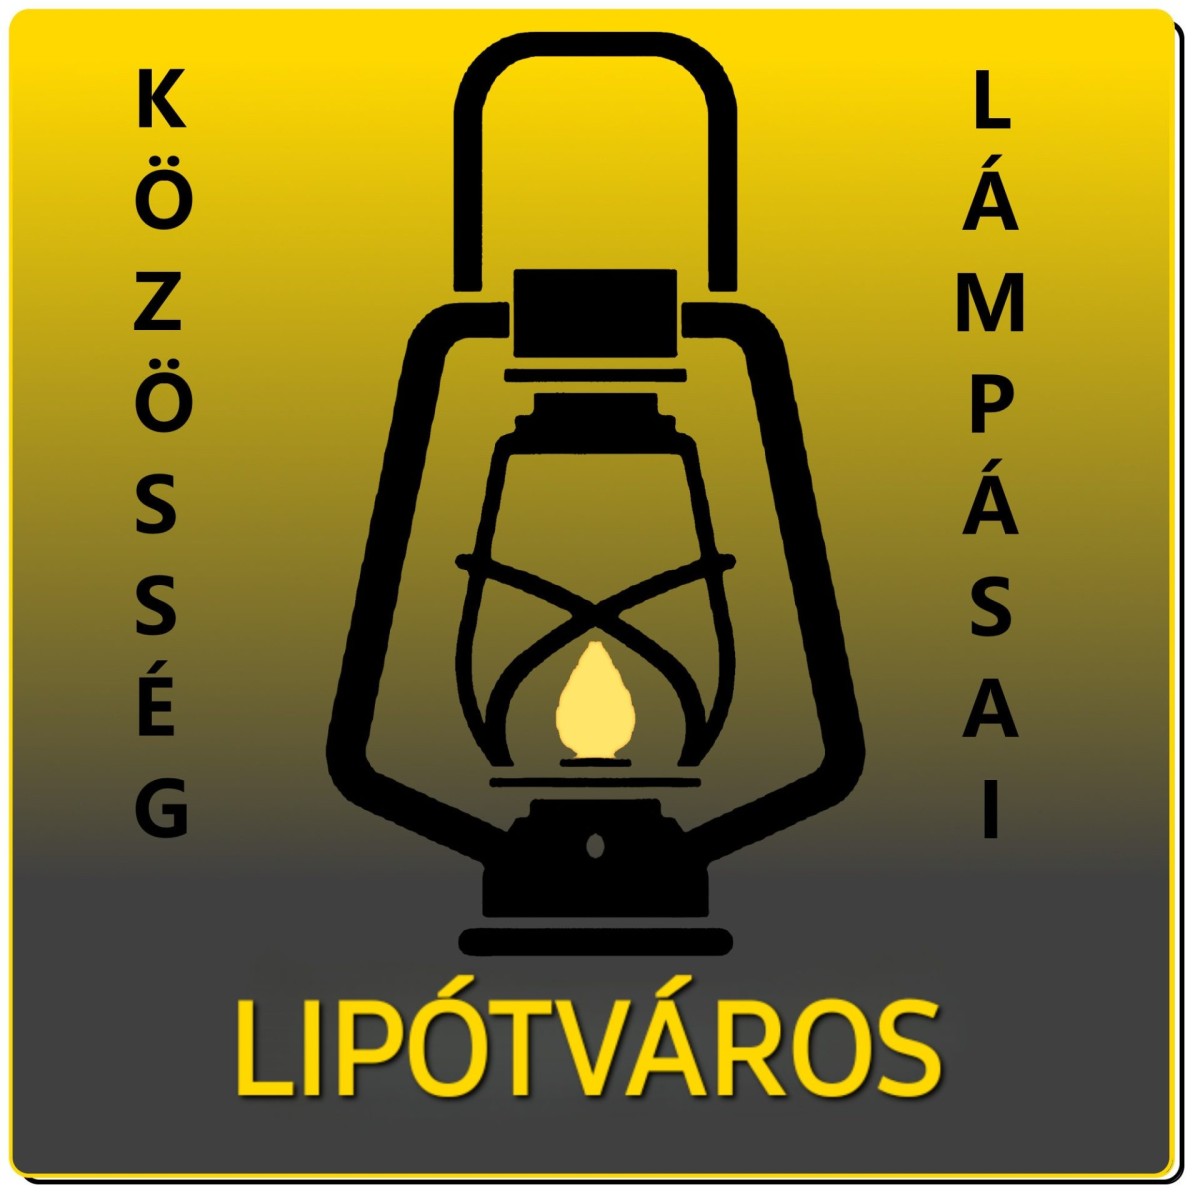 A lipótvárosi Lámpás klub logója